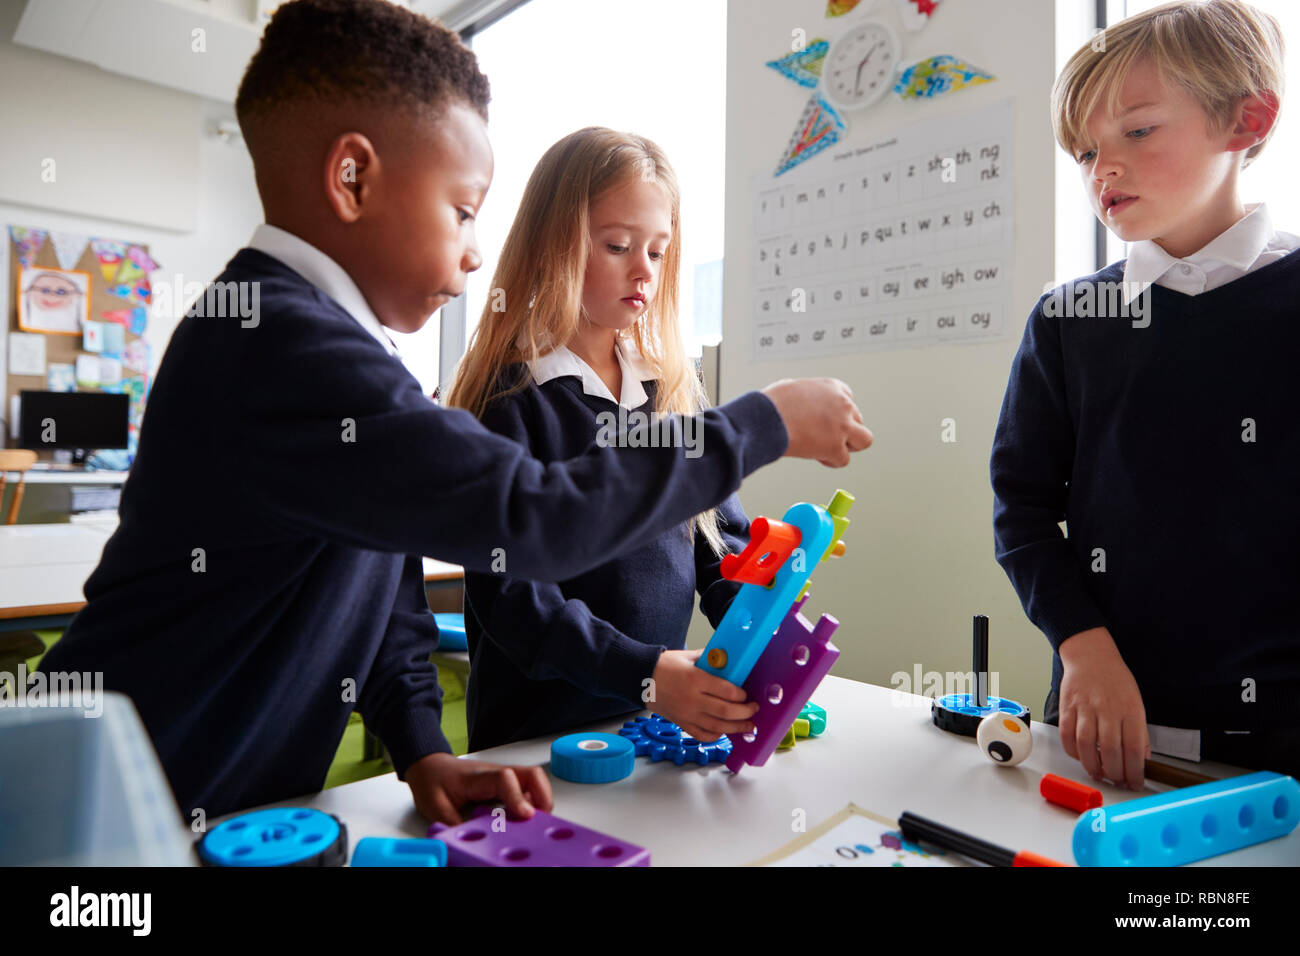 Près de trois enfants de l'école primaire travaillant ensemble avec les blocs de construction de jouets dans une salle de classe, side view Banque D'Images